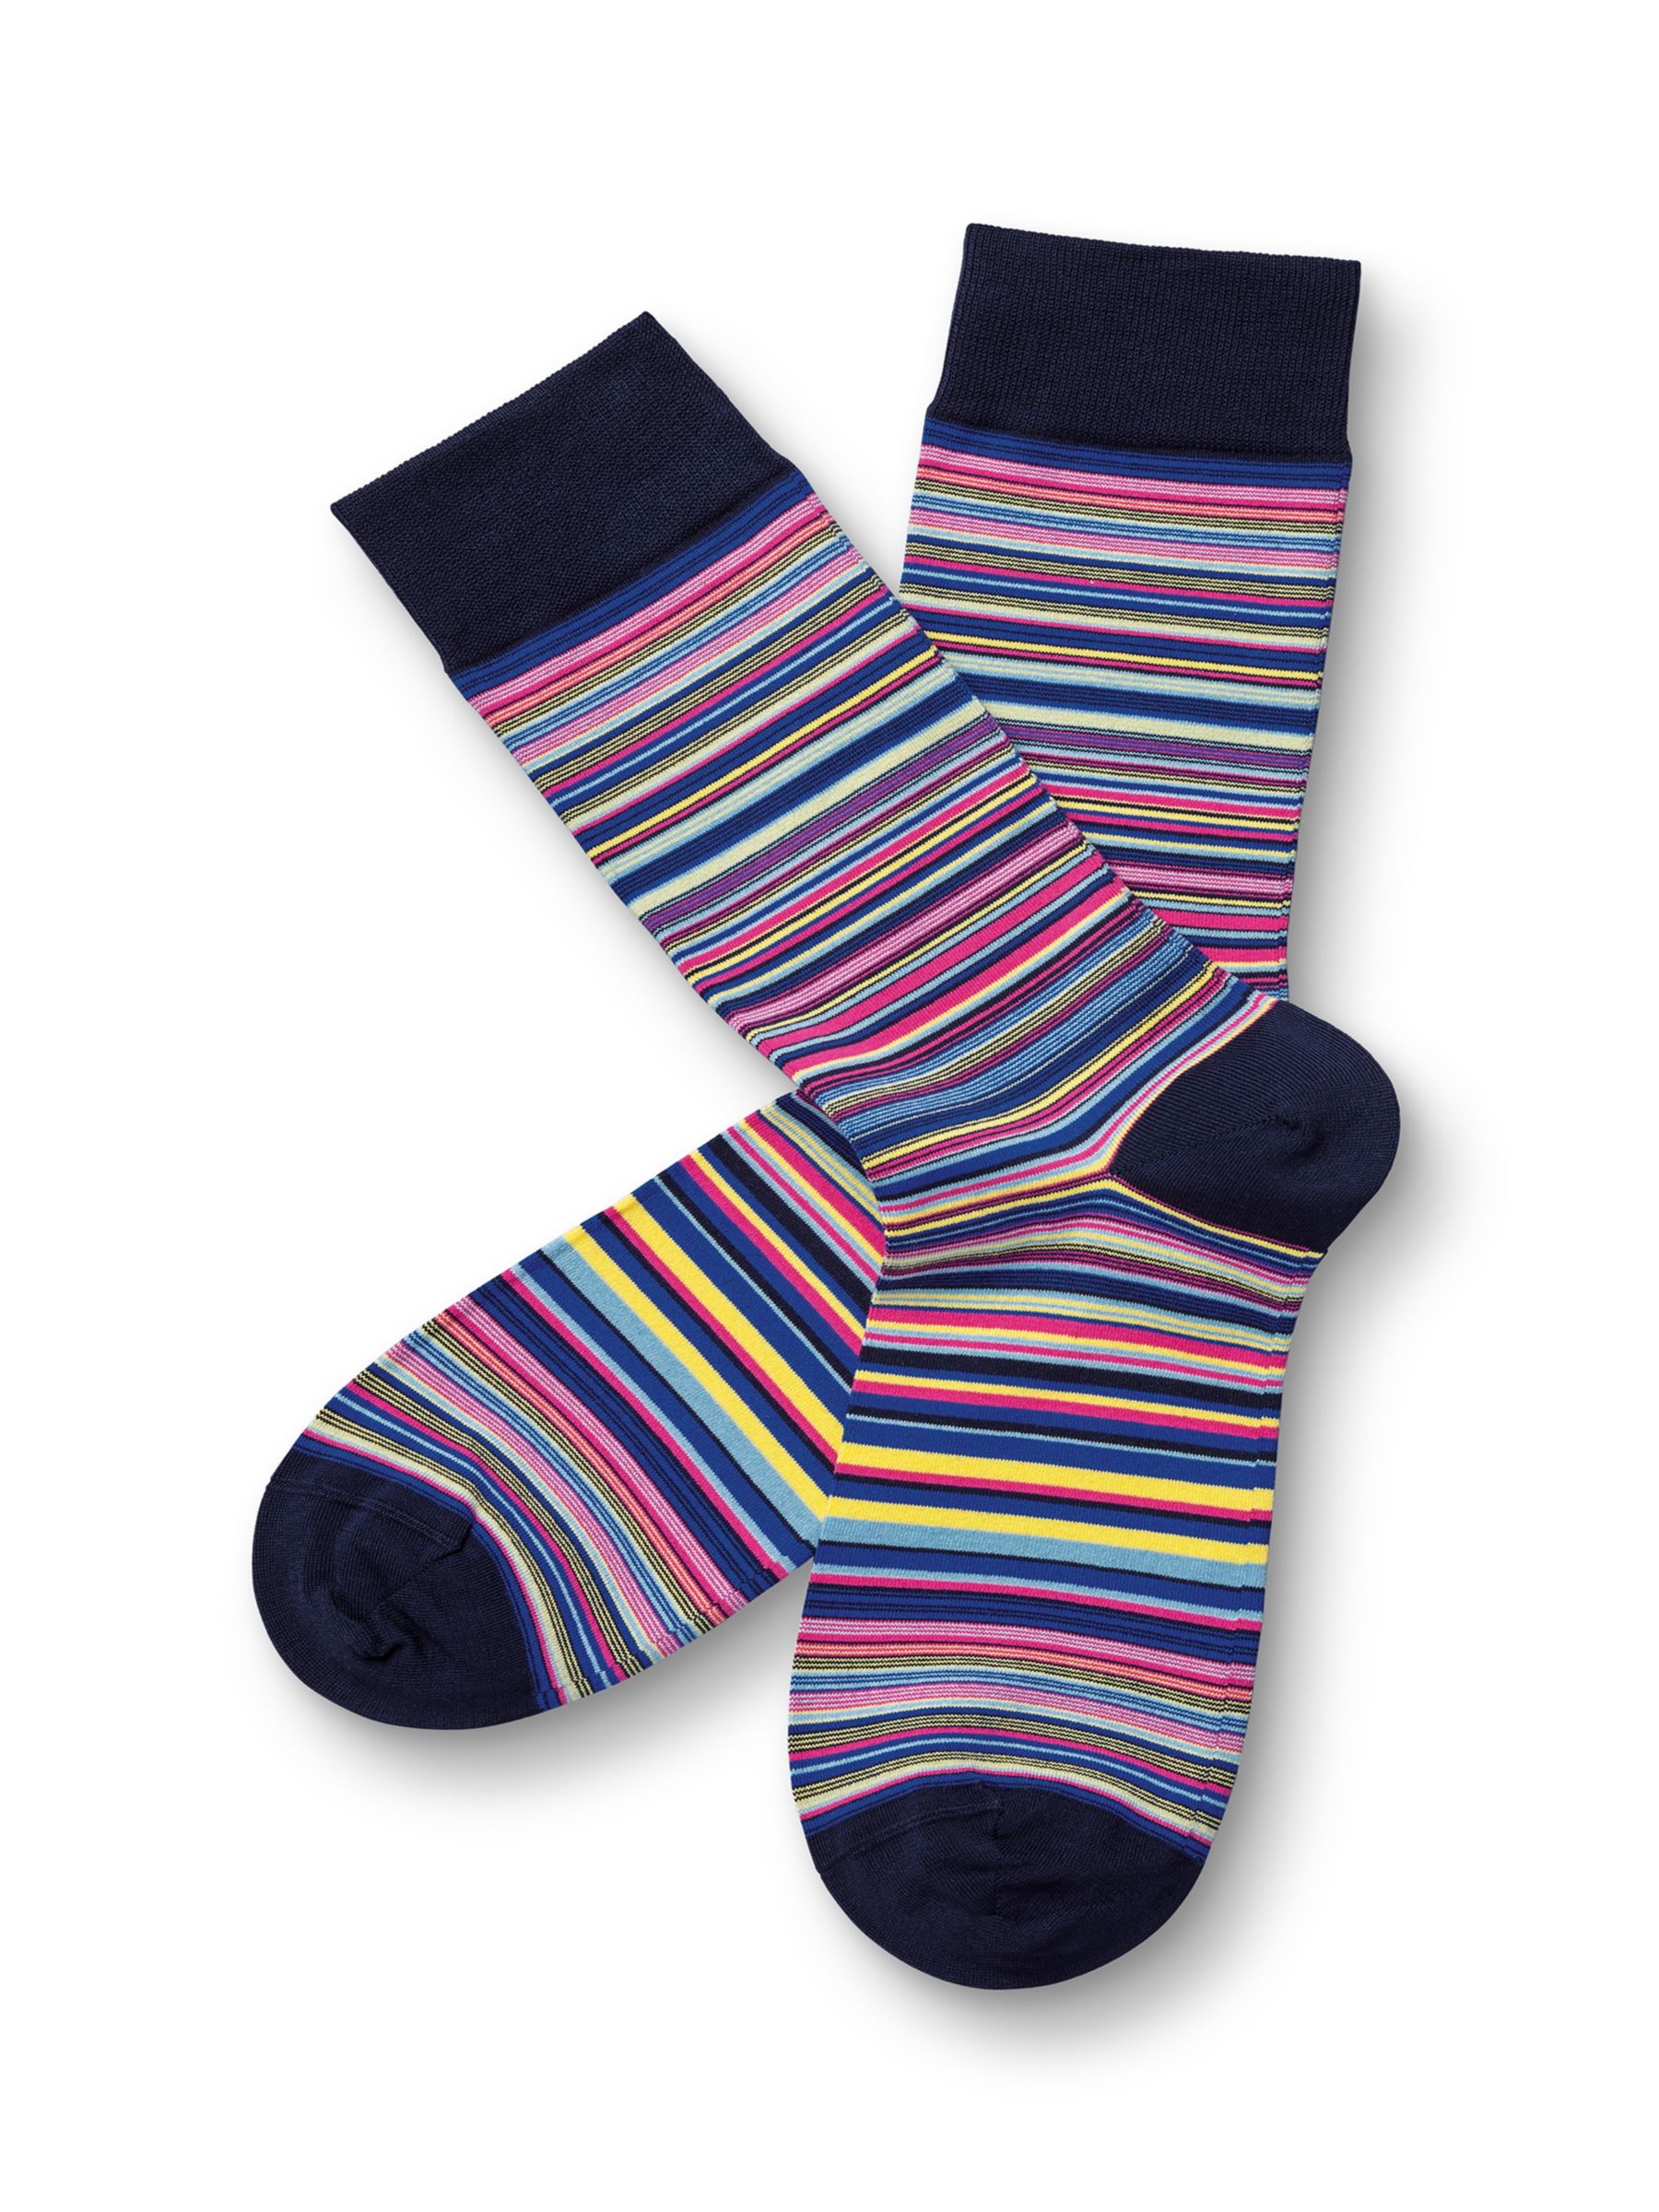 Charles Tyrwhitt Every Day Stripe Socks, Multi at John Lewis & Partners